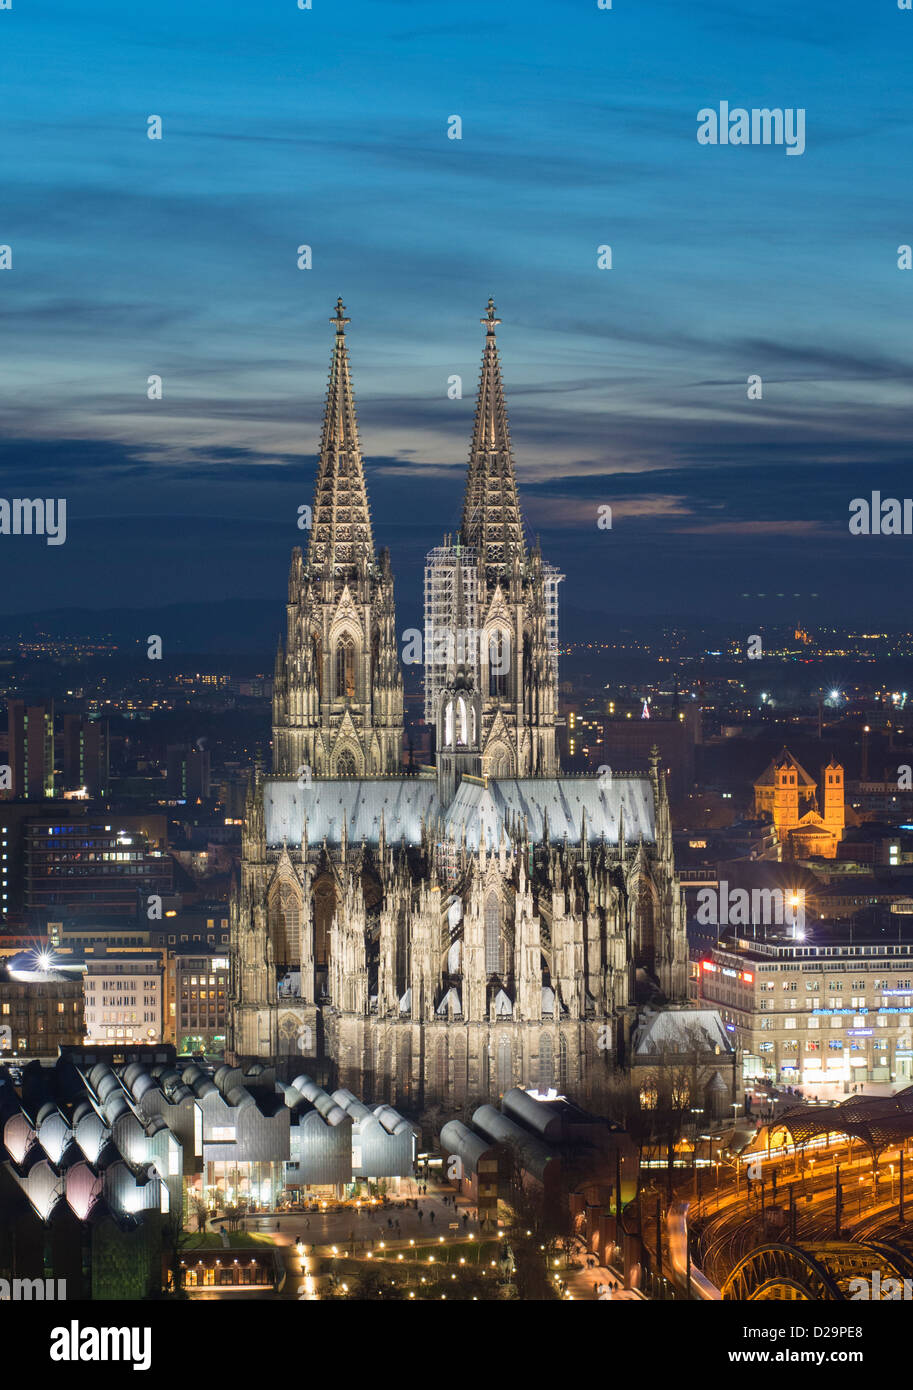 Vista nocturna del horizonte de Colonia, Alemania con la Catedral de Colonia iluminada prominente Foto de stock